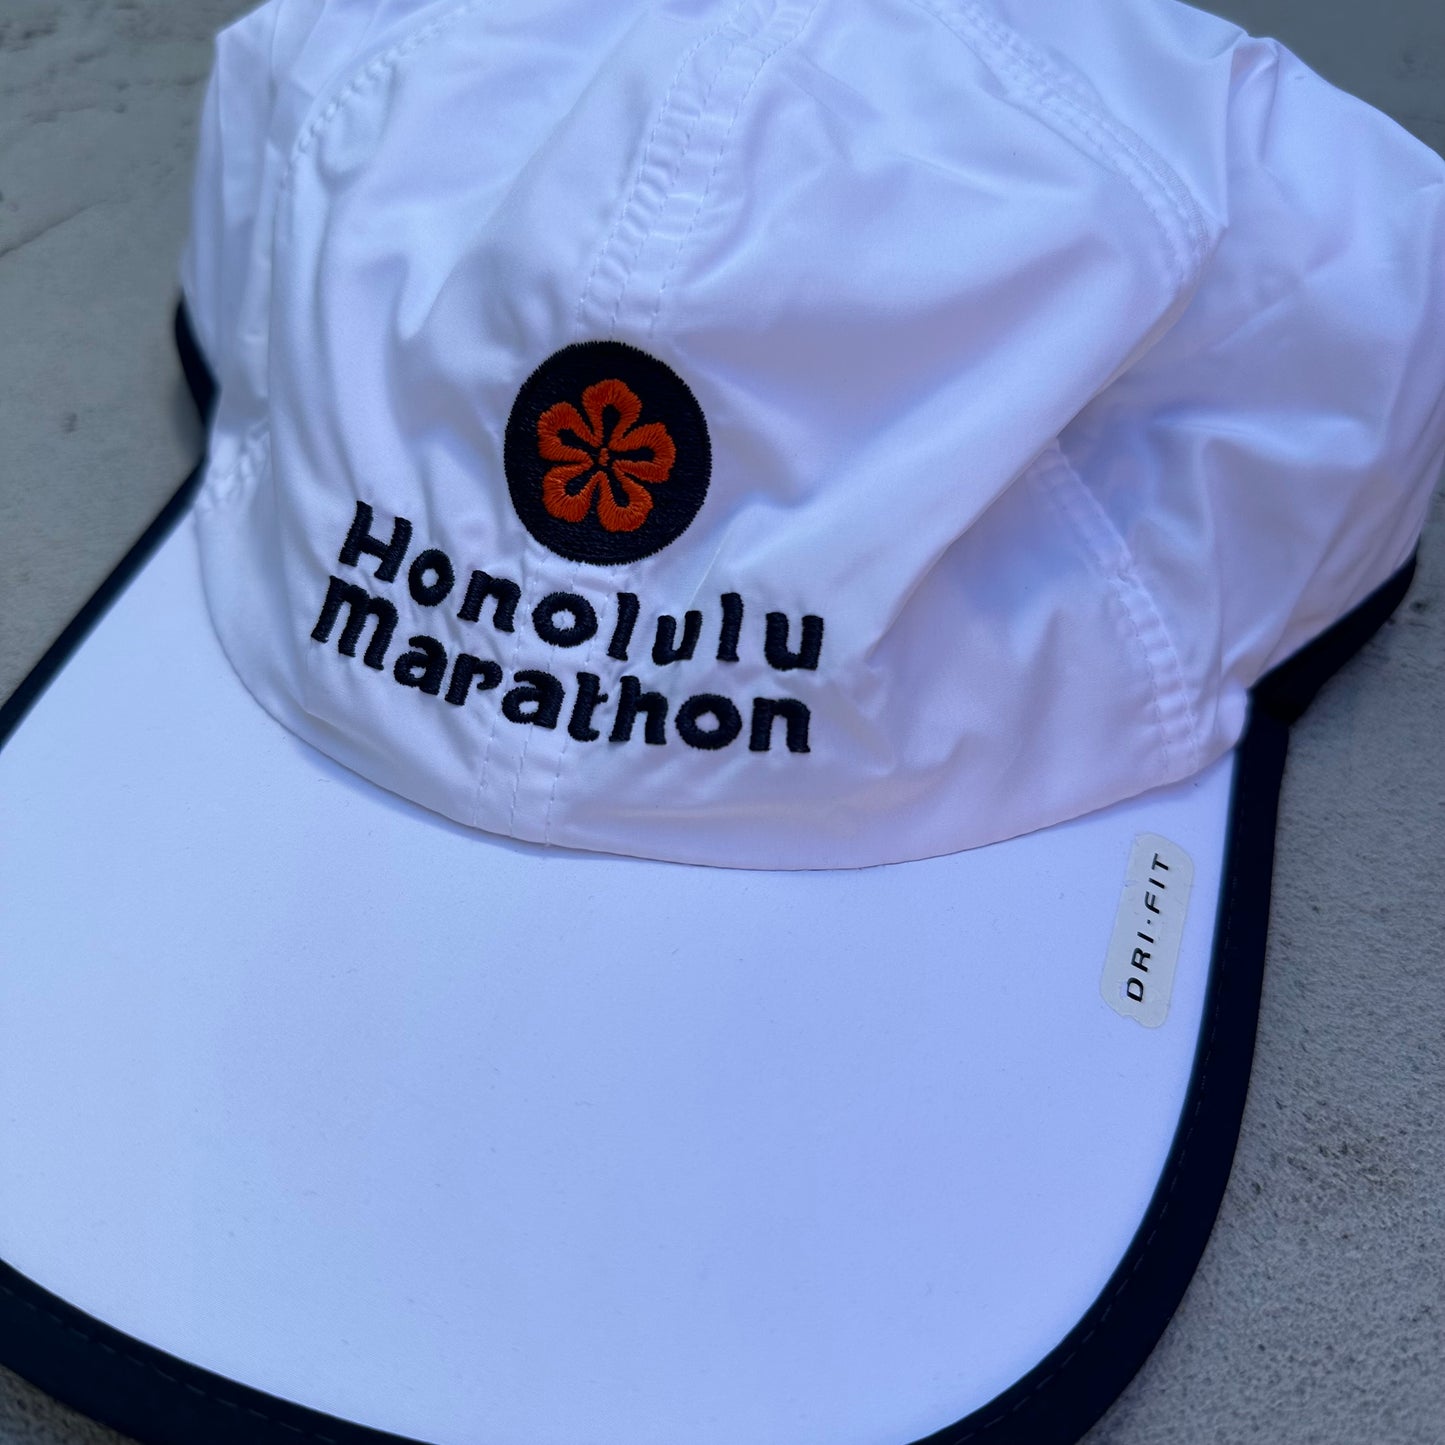 Vintage Nike Honolulu Marathon Hawaii Hat